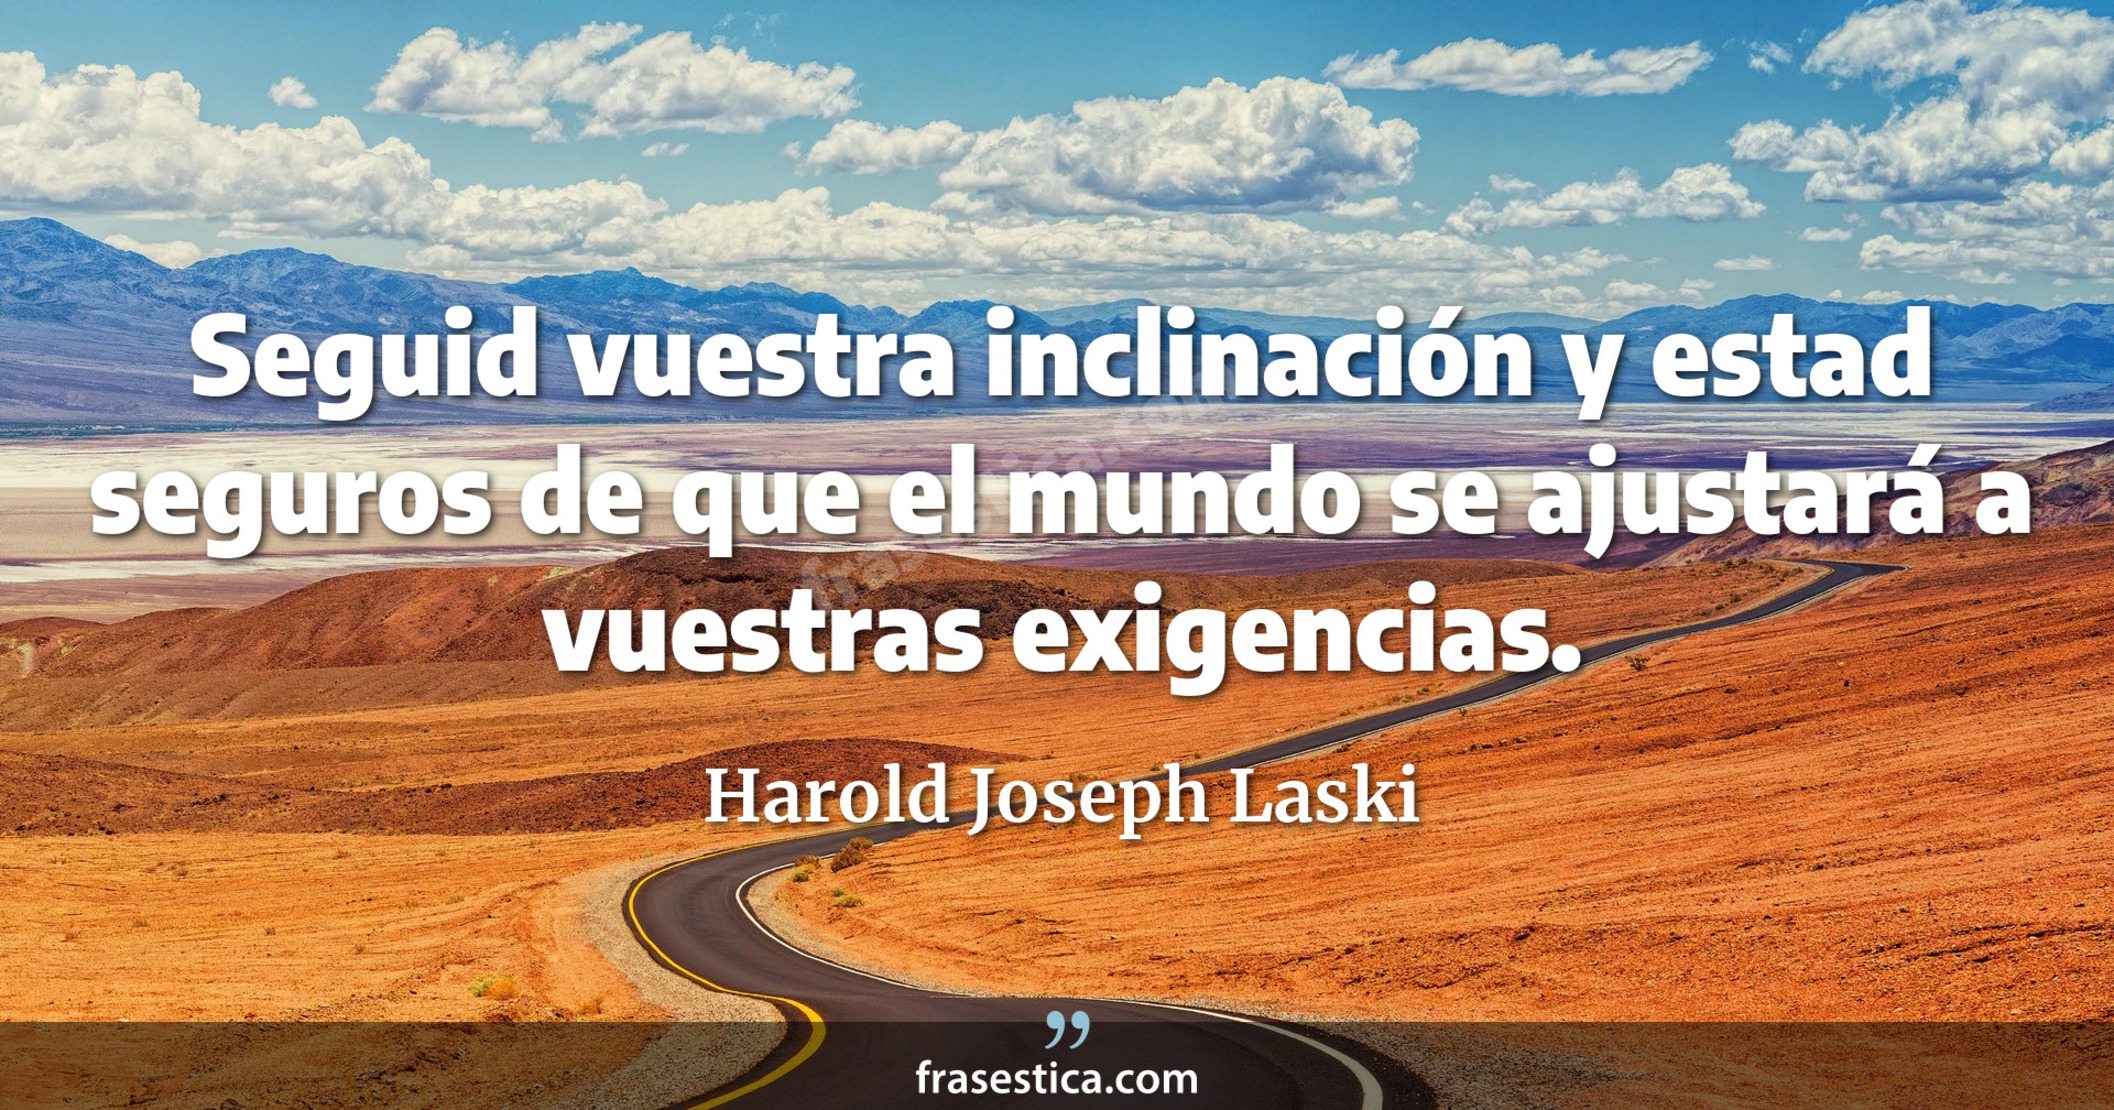 Seguid vuestra inclinación y estad seguros de que el mundo se ajustará a vuestras exigencias. - Harold Joseph Laski